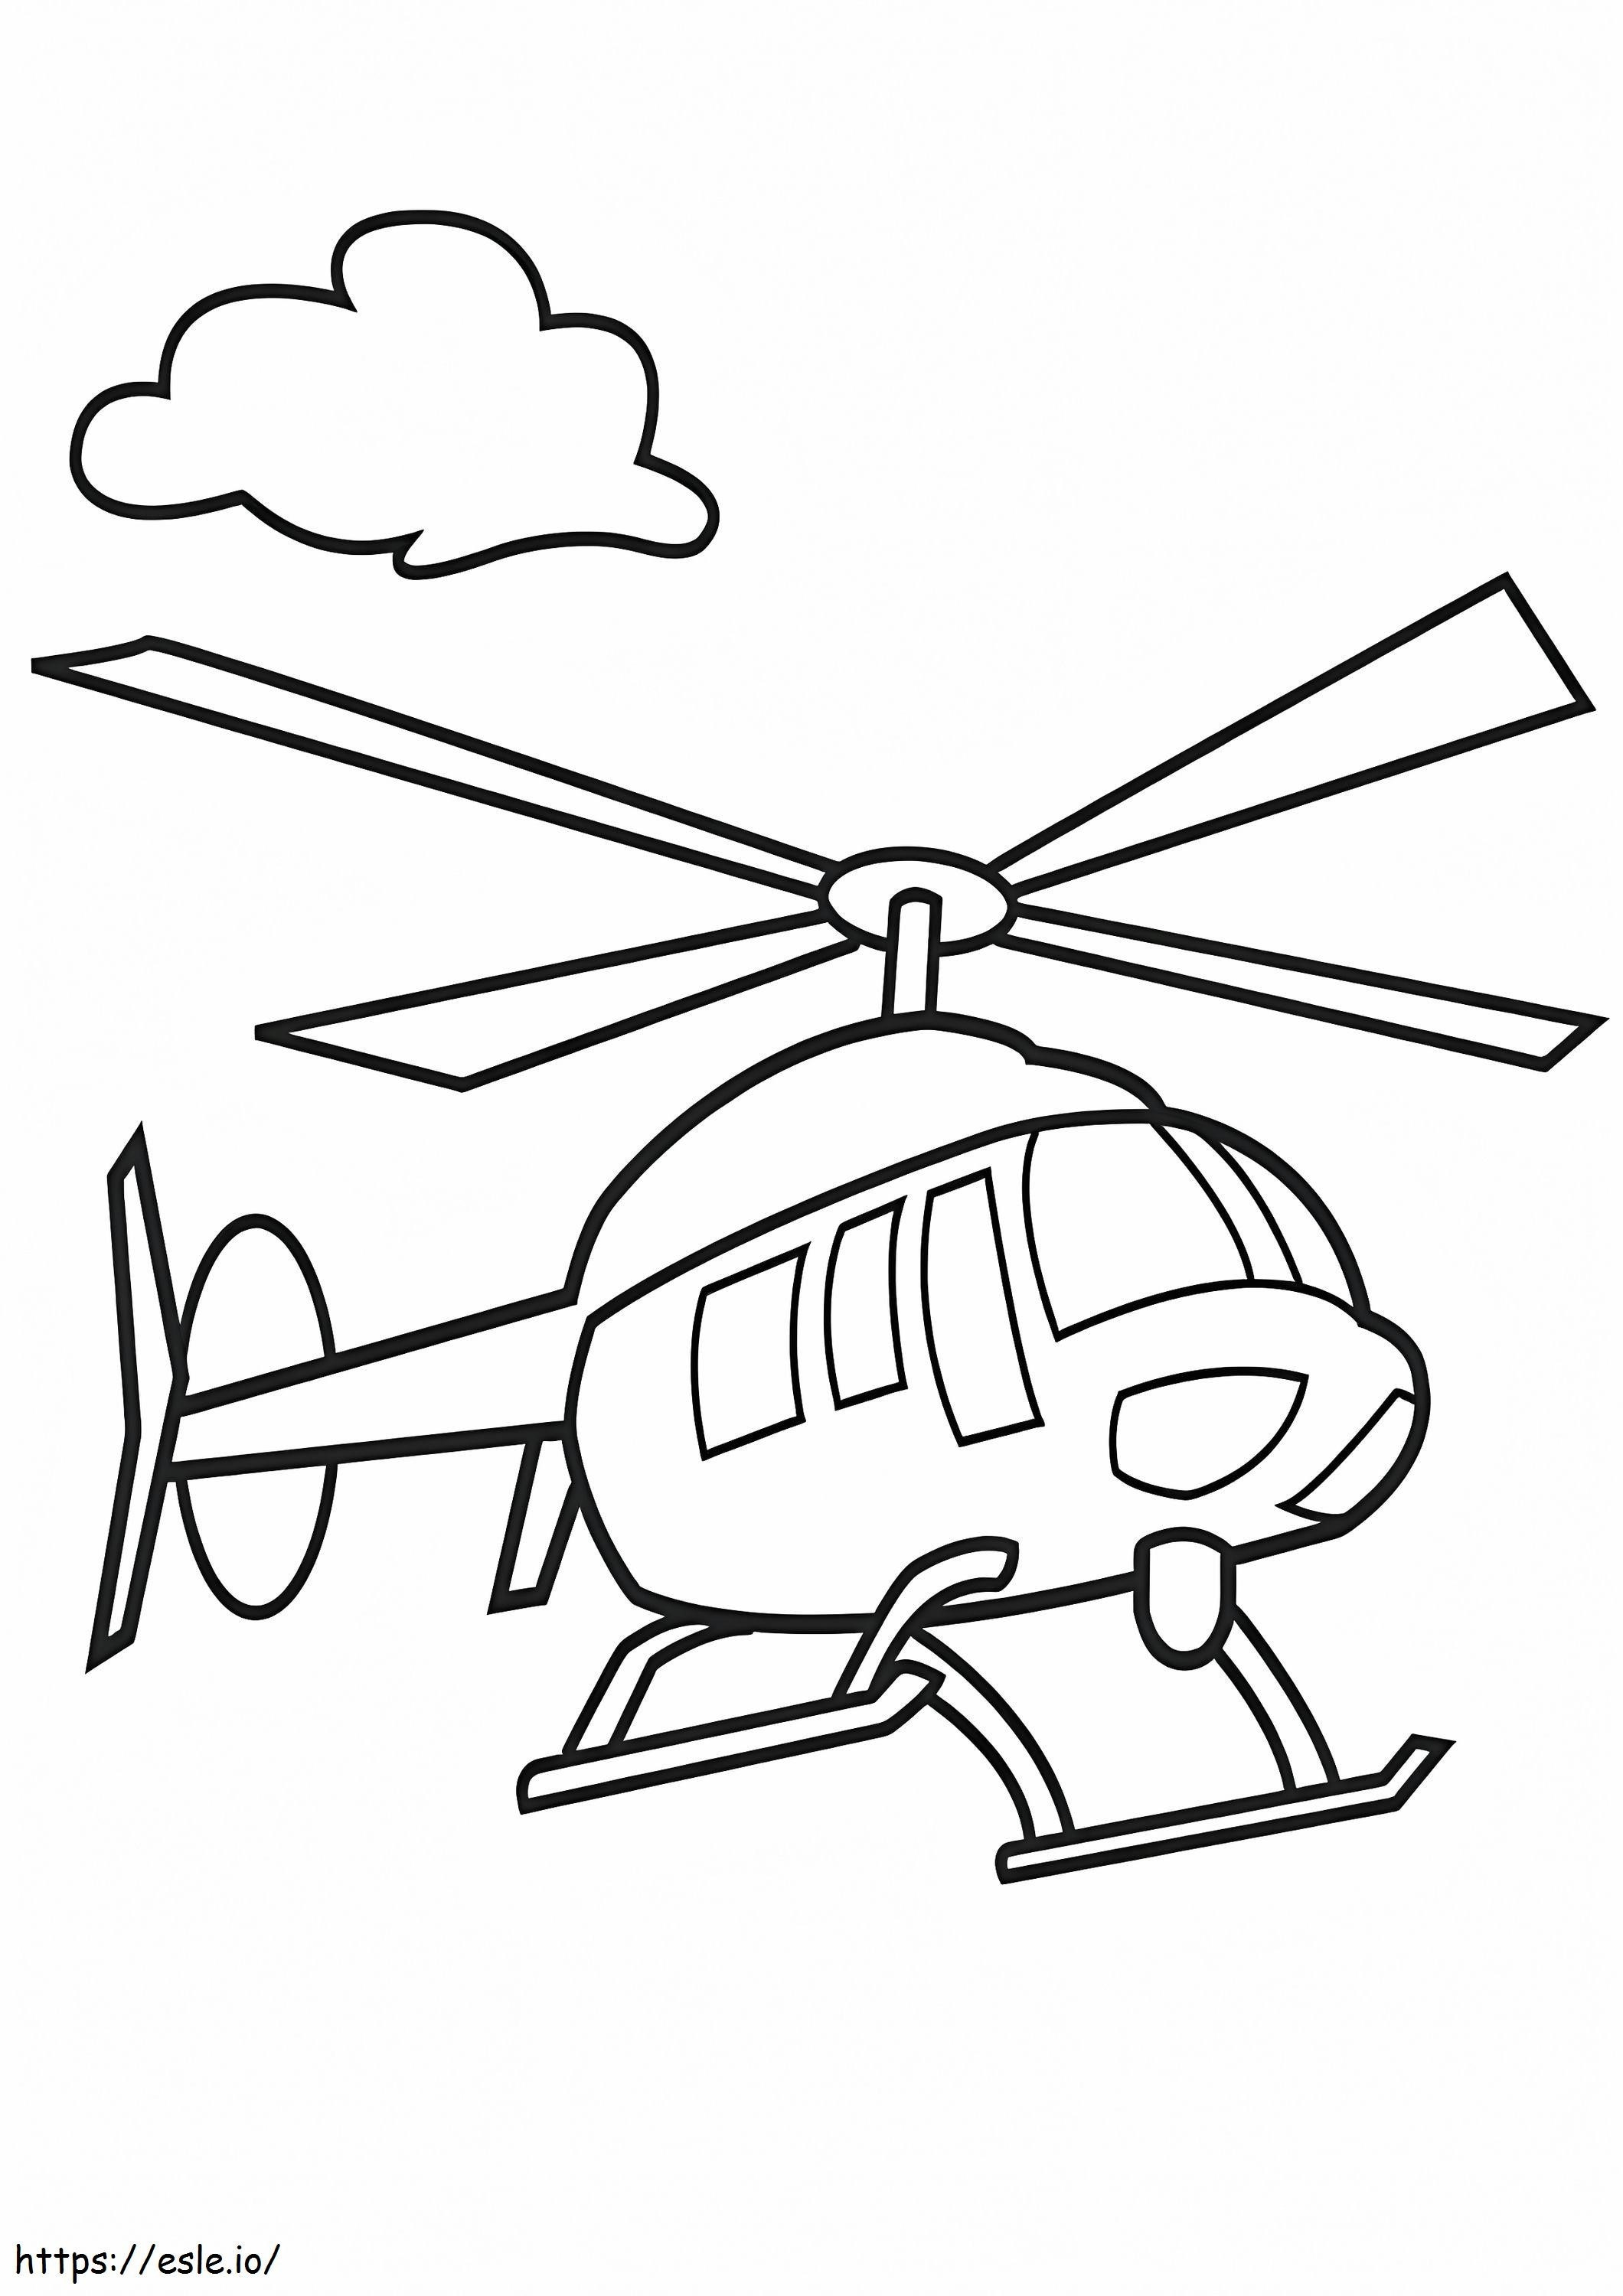 Helikopter 2 kleurplaat kleurplaat